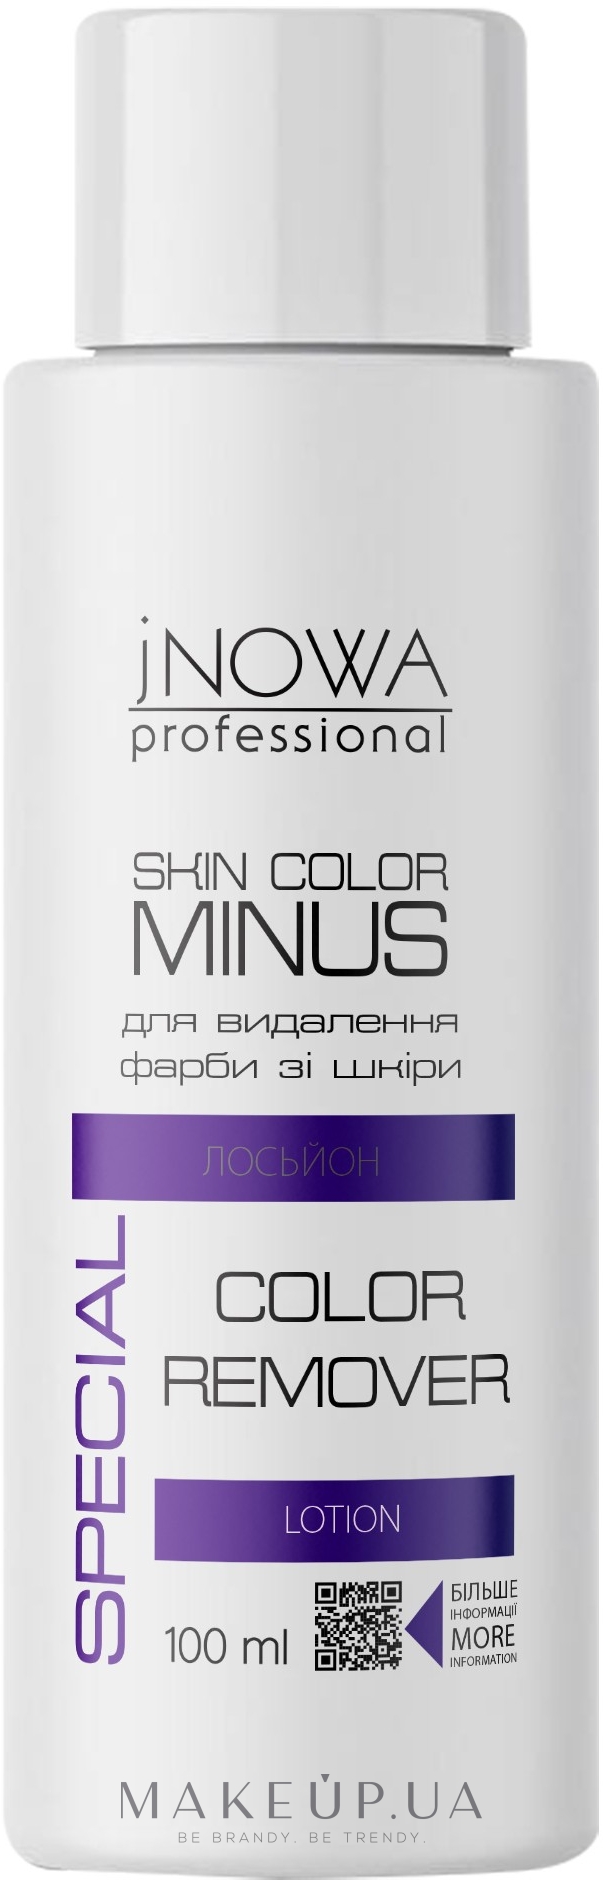 Лосьон для удаления краски с кожи - jNOWA Professional Skin Color Minus — фото 100ml